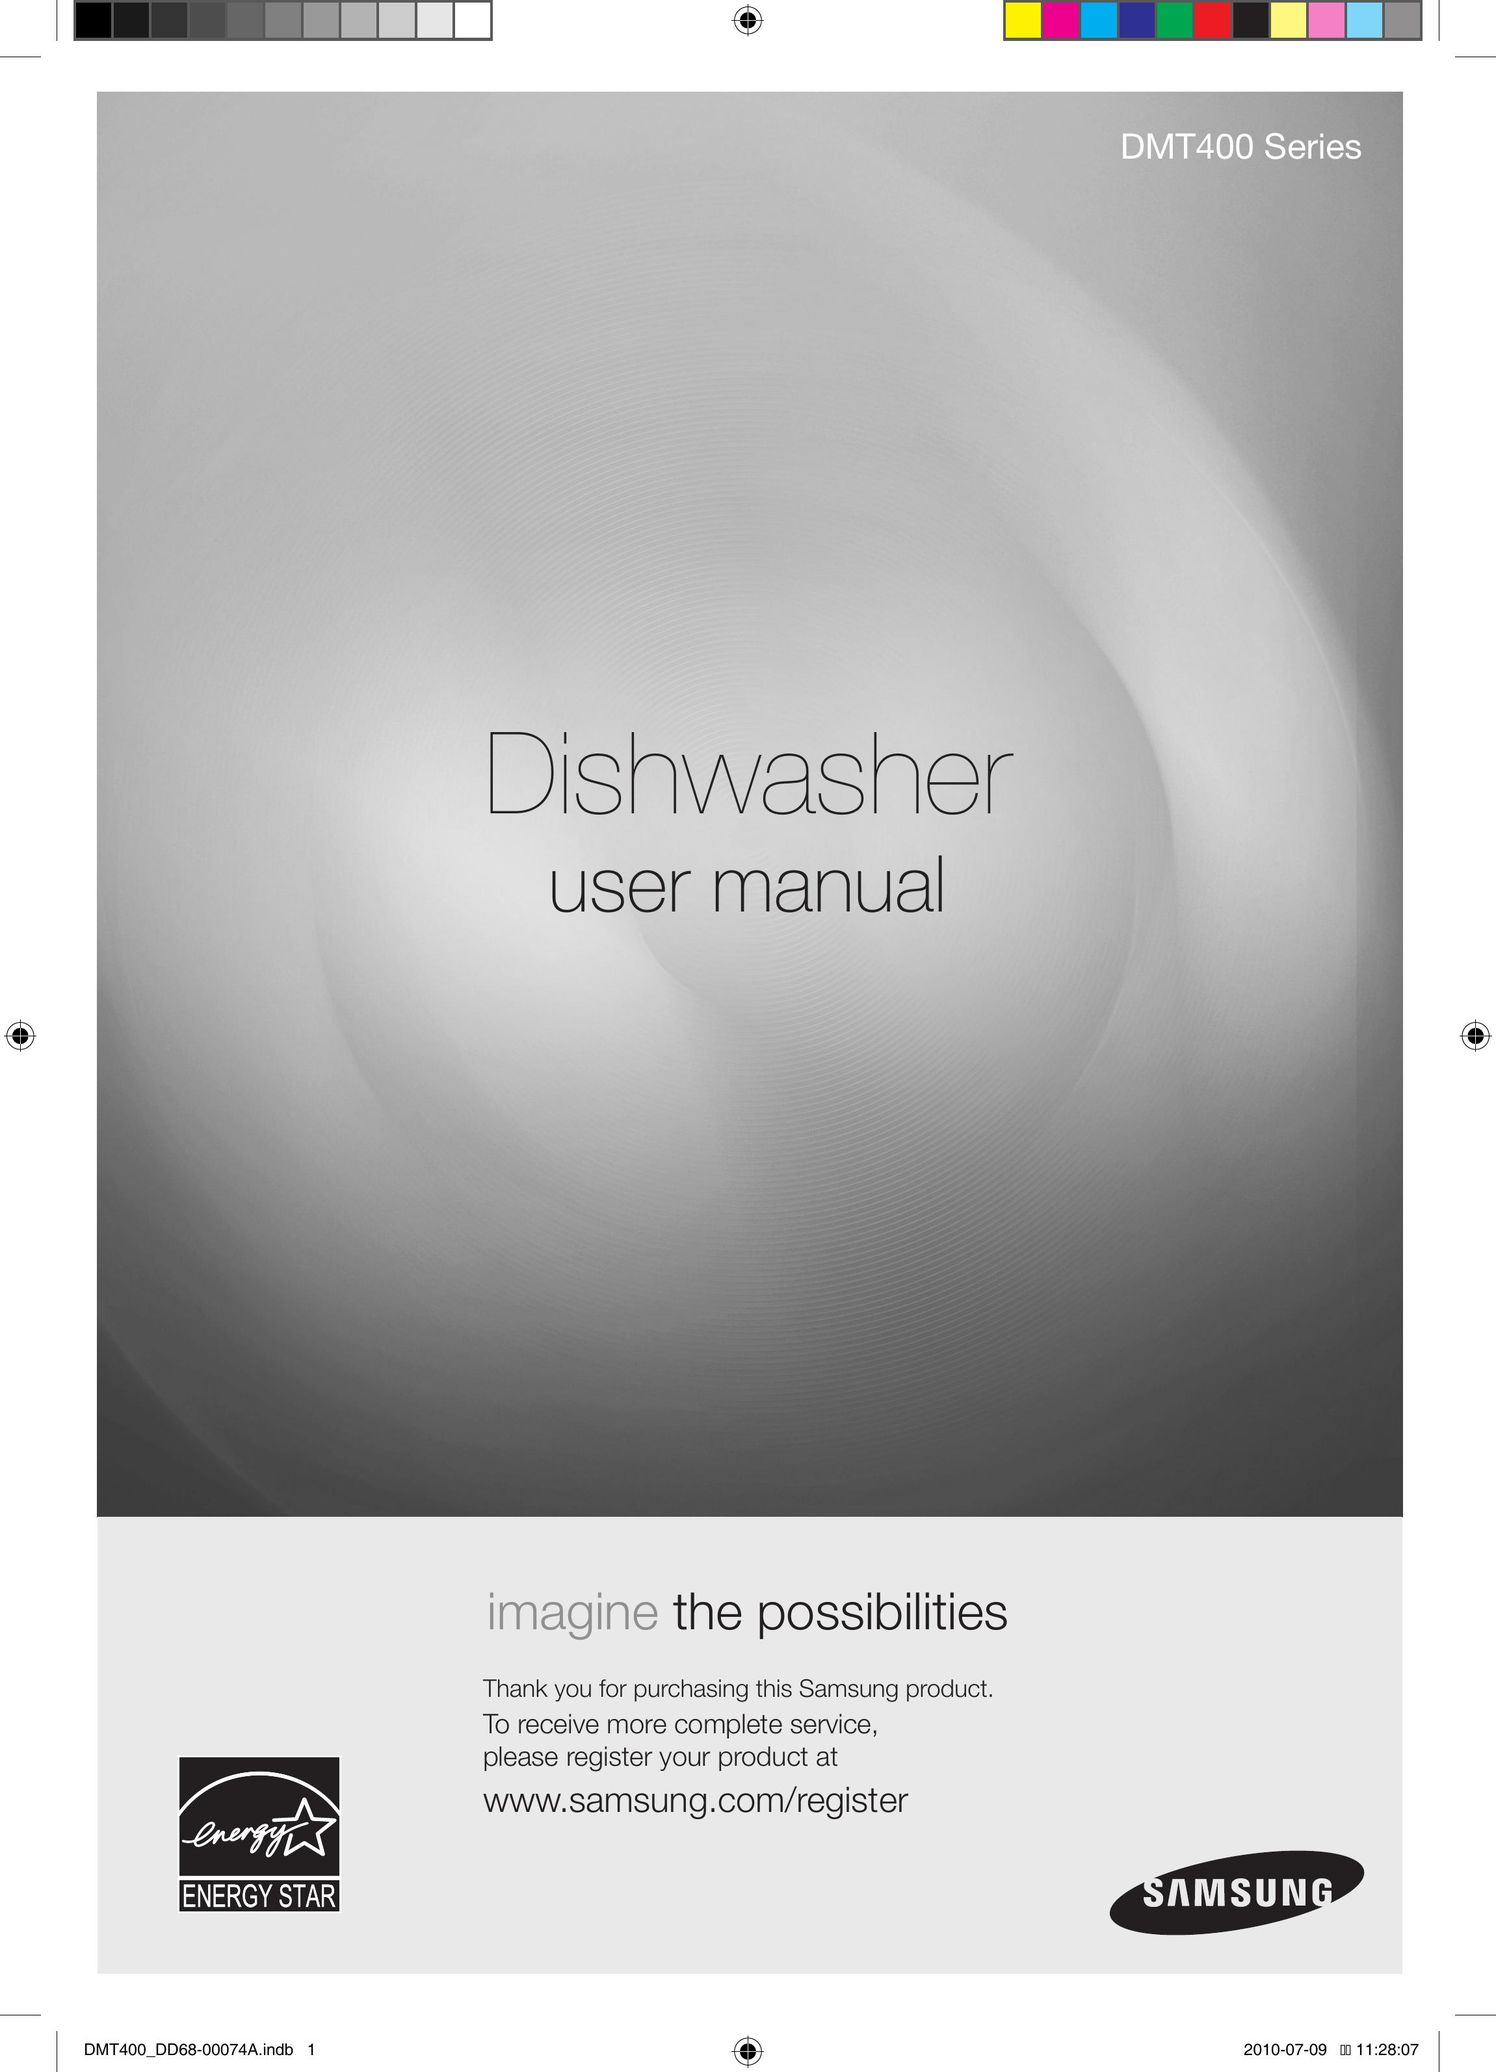 Samsung DMT400 Dishwasher User Manual